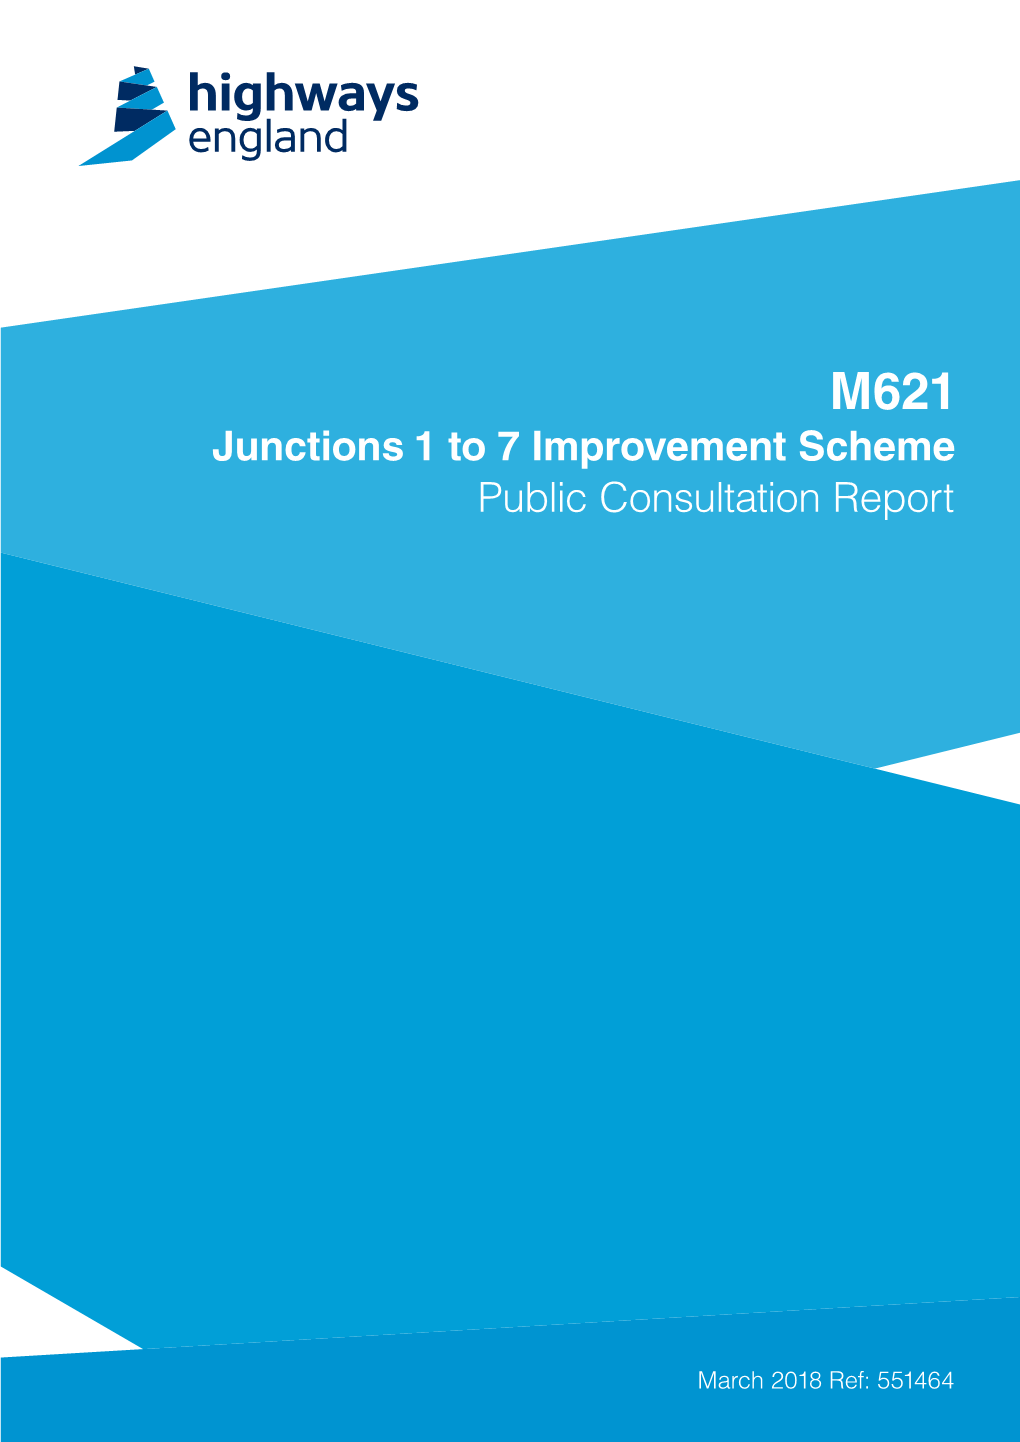 Public Consultation Report